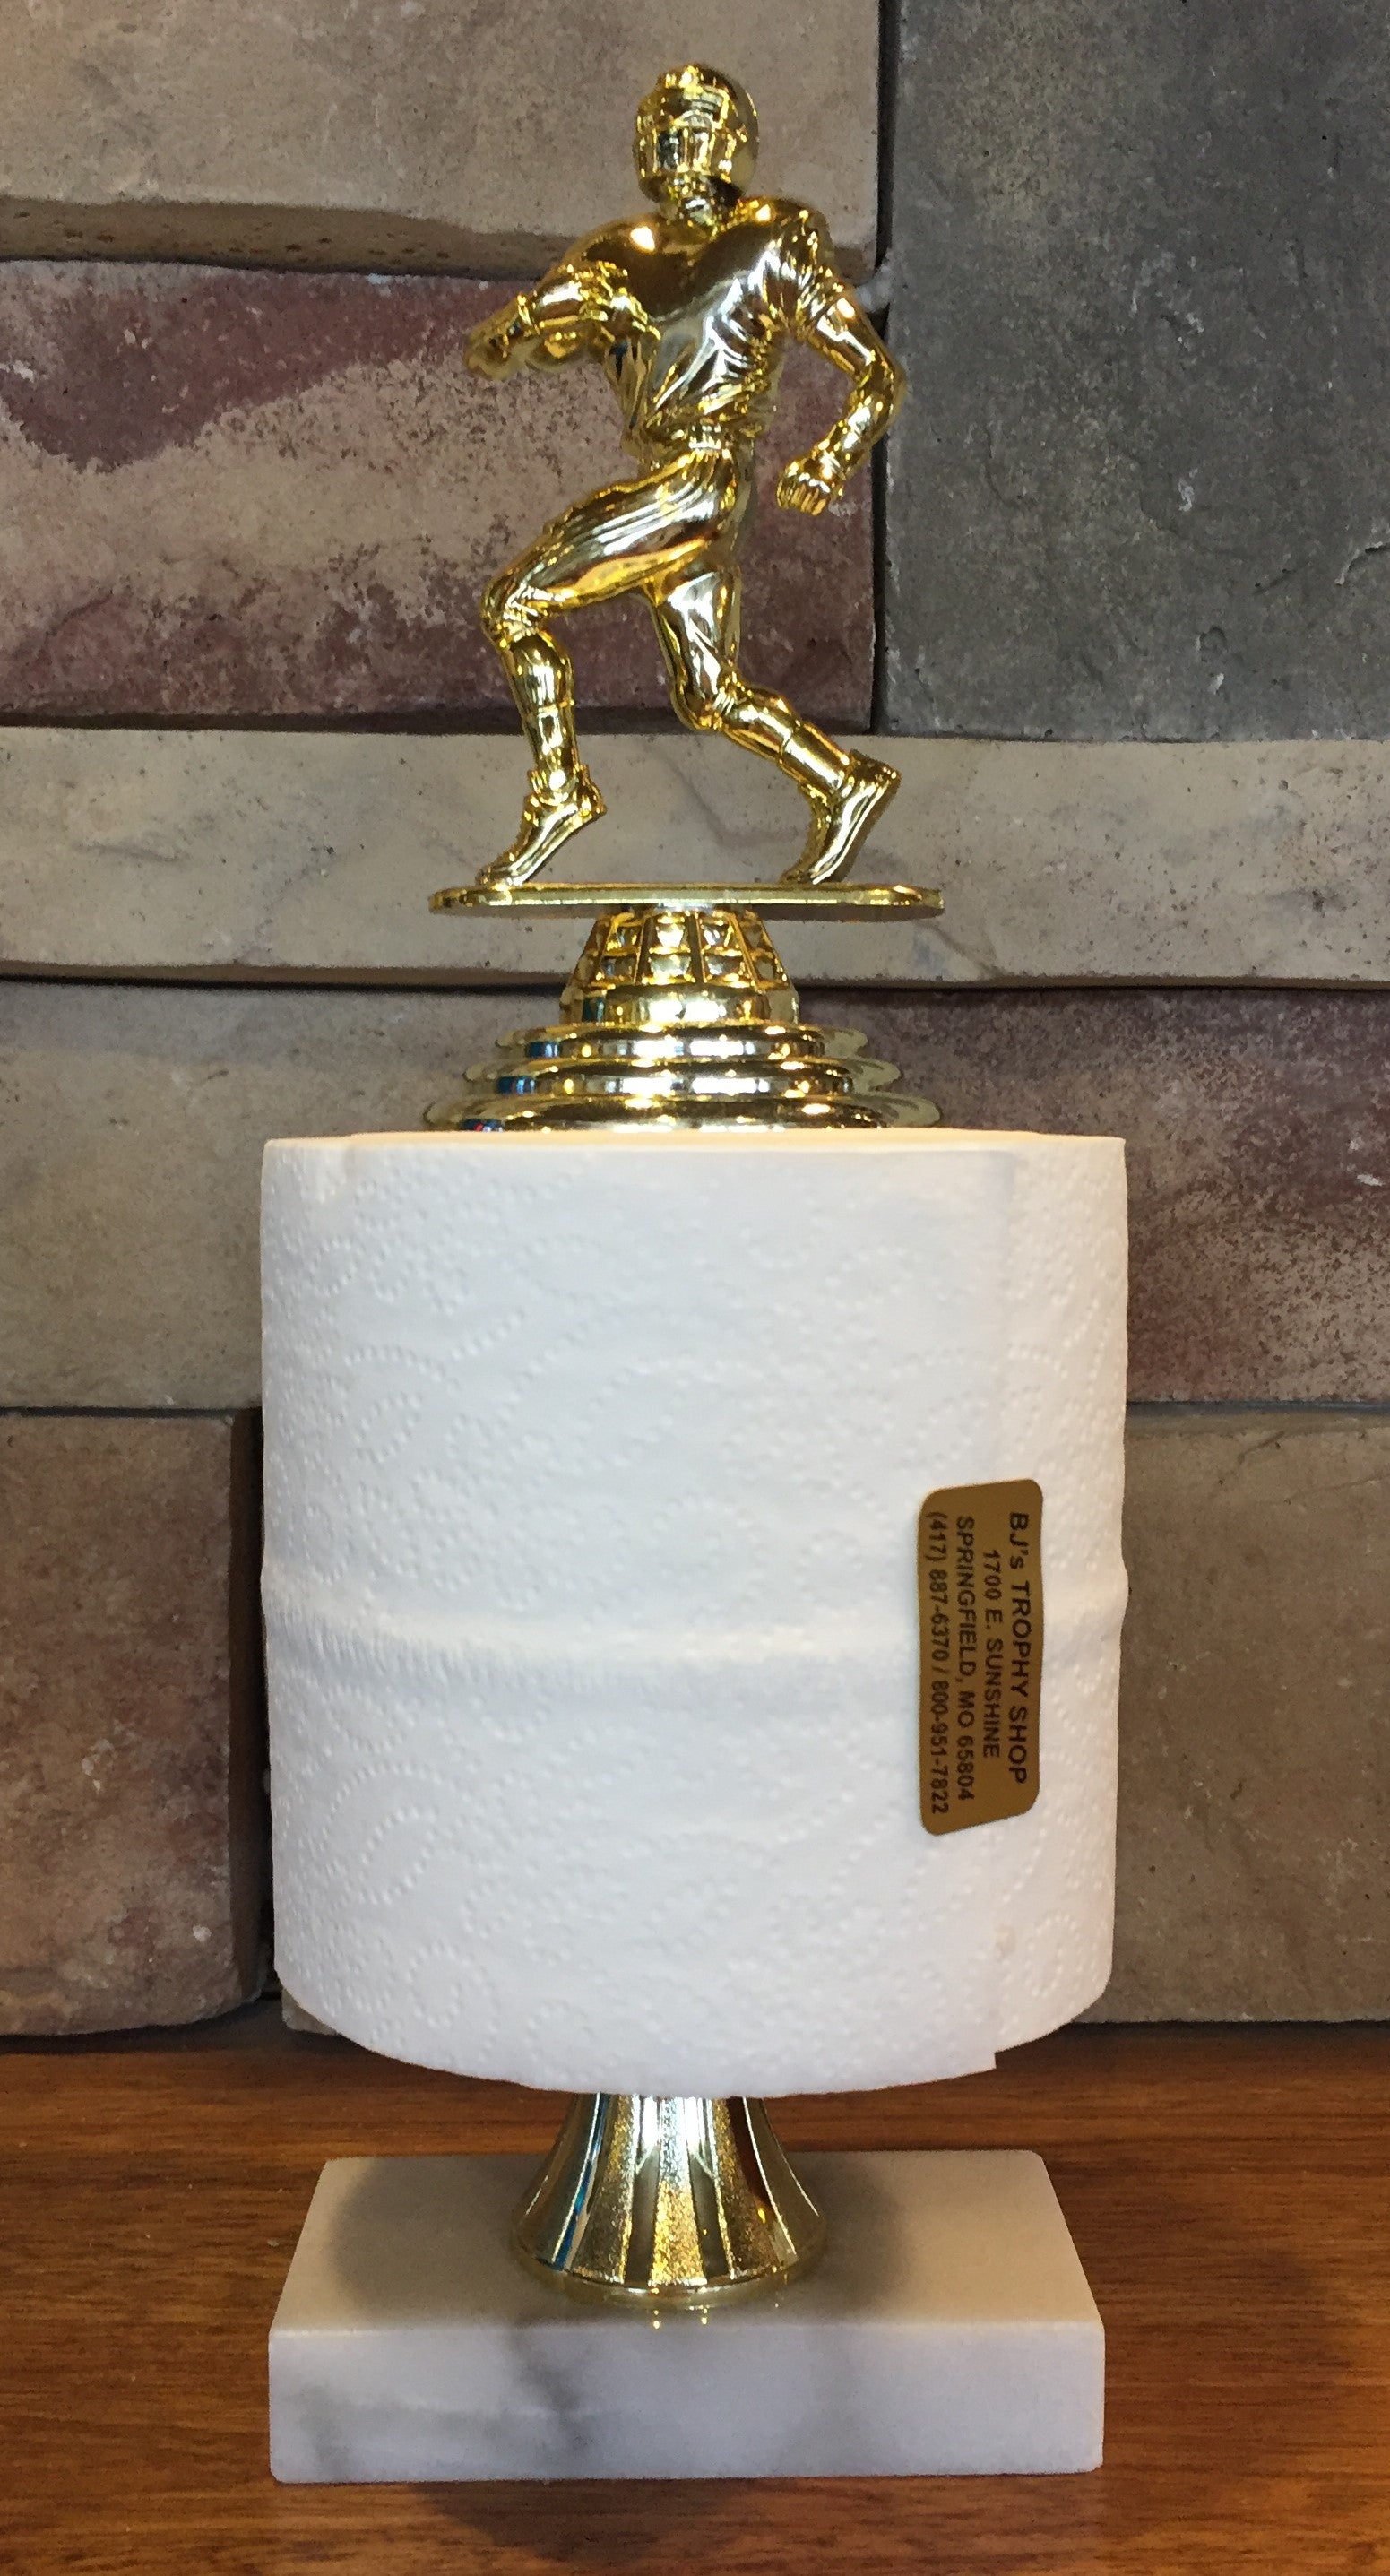 Toilet Paper Last Place Trophy